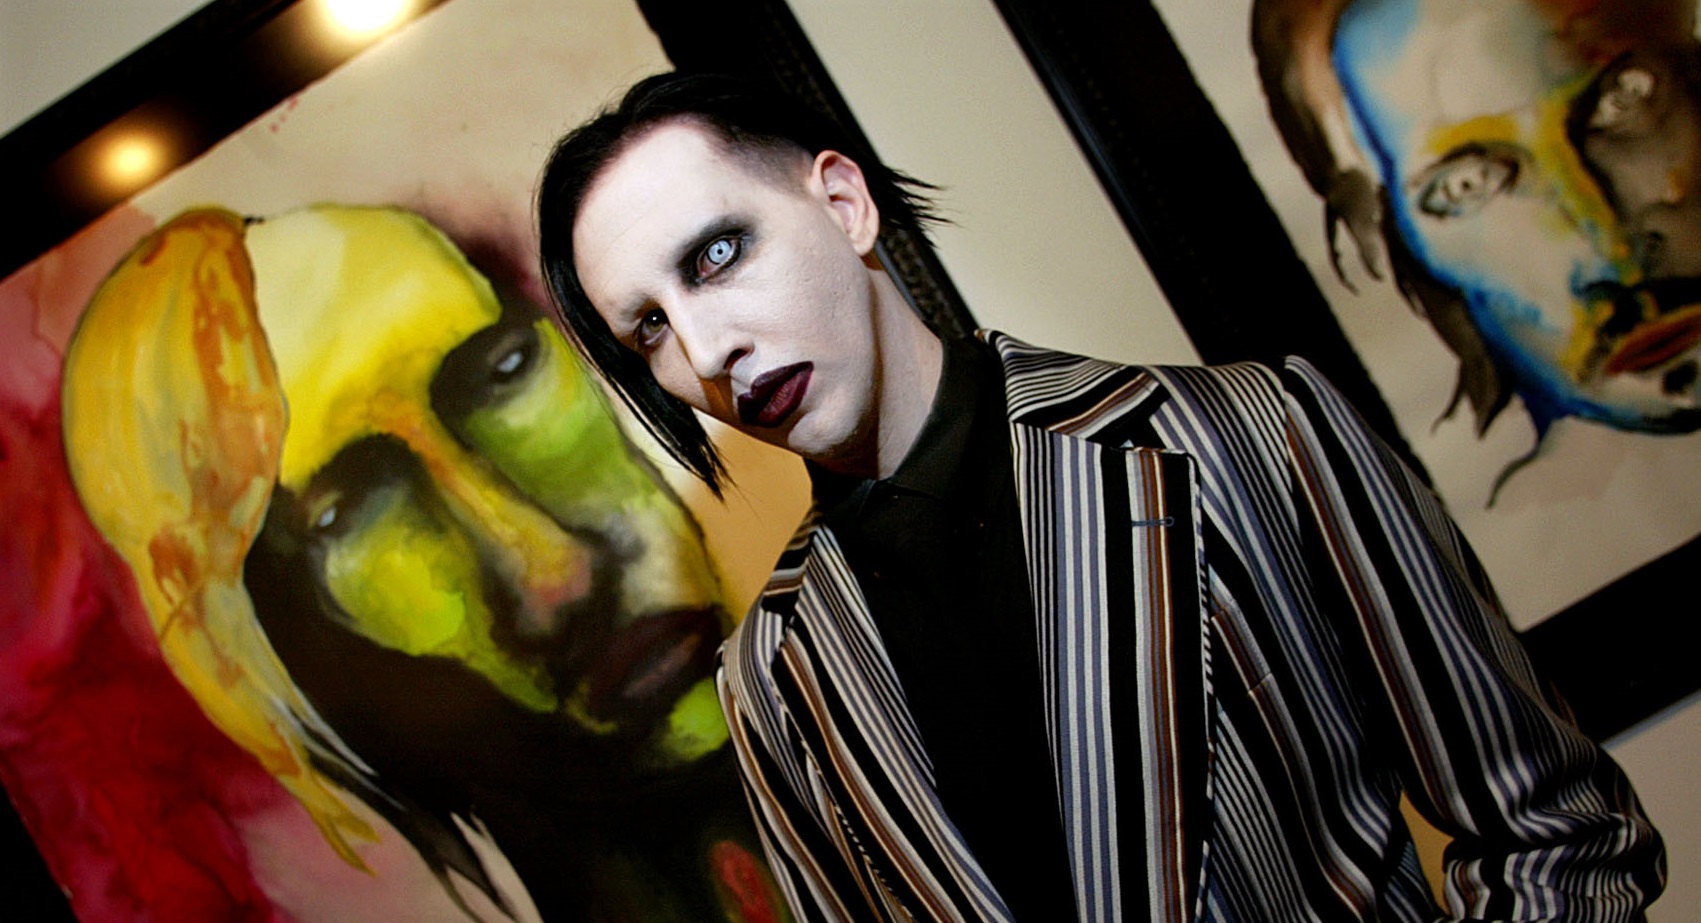 53. születésnapját ünnepli Marilyn Manson - összegyűjtöttük a rocksztár  legemlékezetesebb botrányait - Blikk